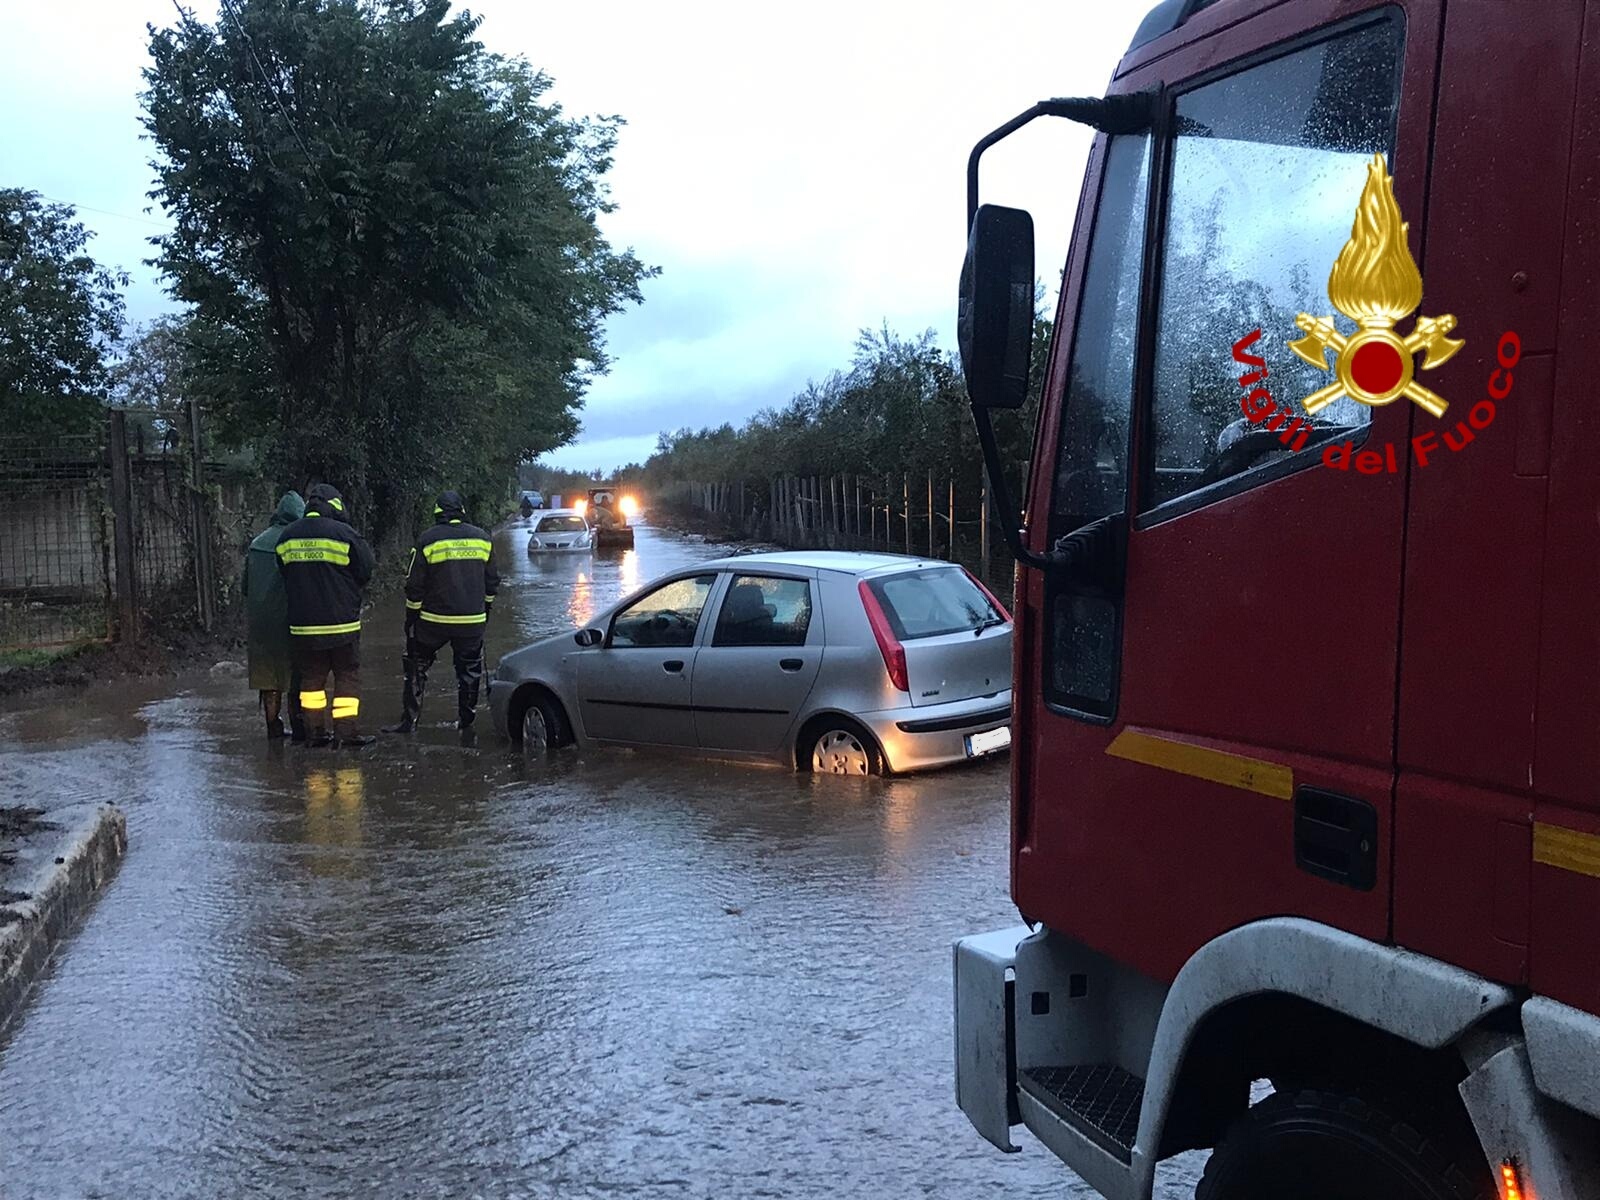 Smottamento sulla strada provinciale Turci, collegamento bloccato tra Solofra e Serino